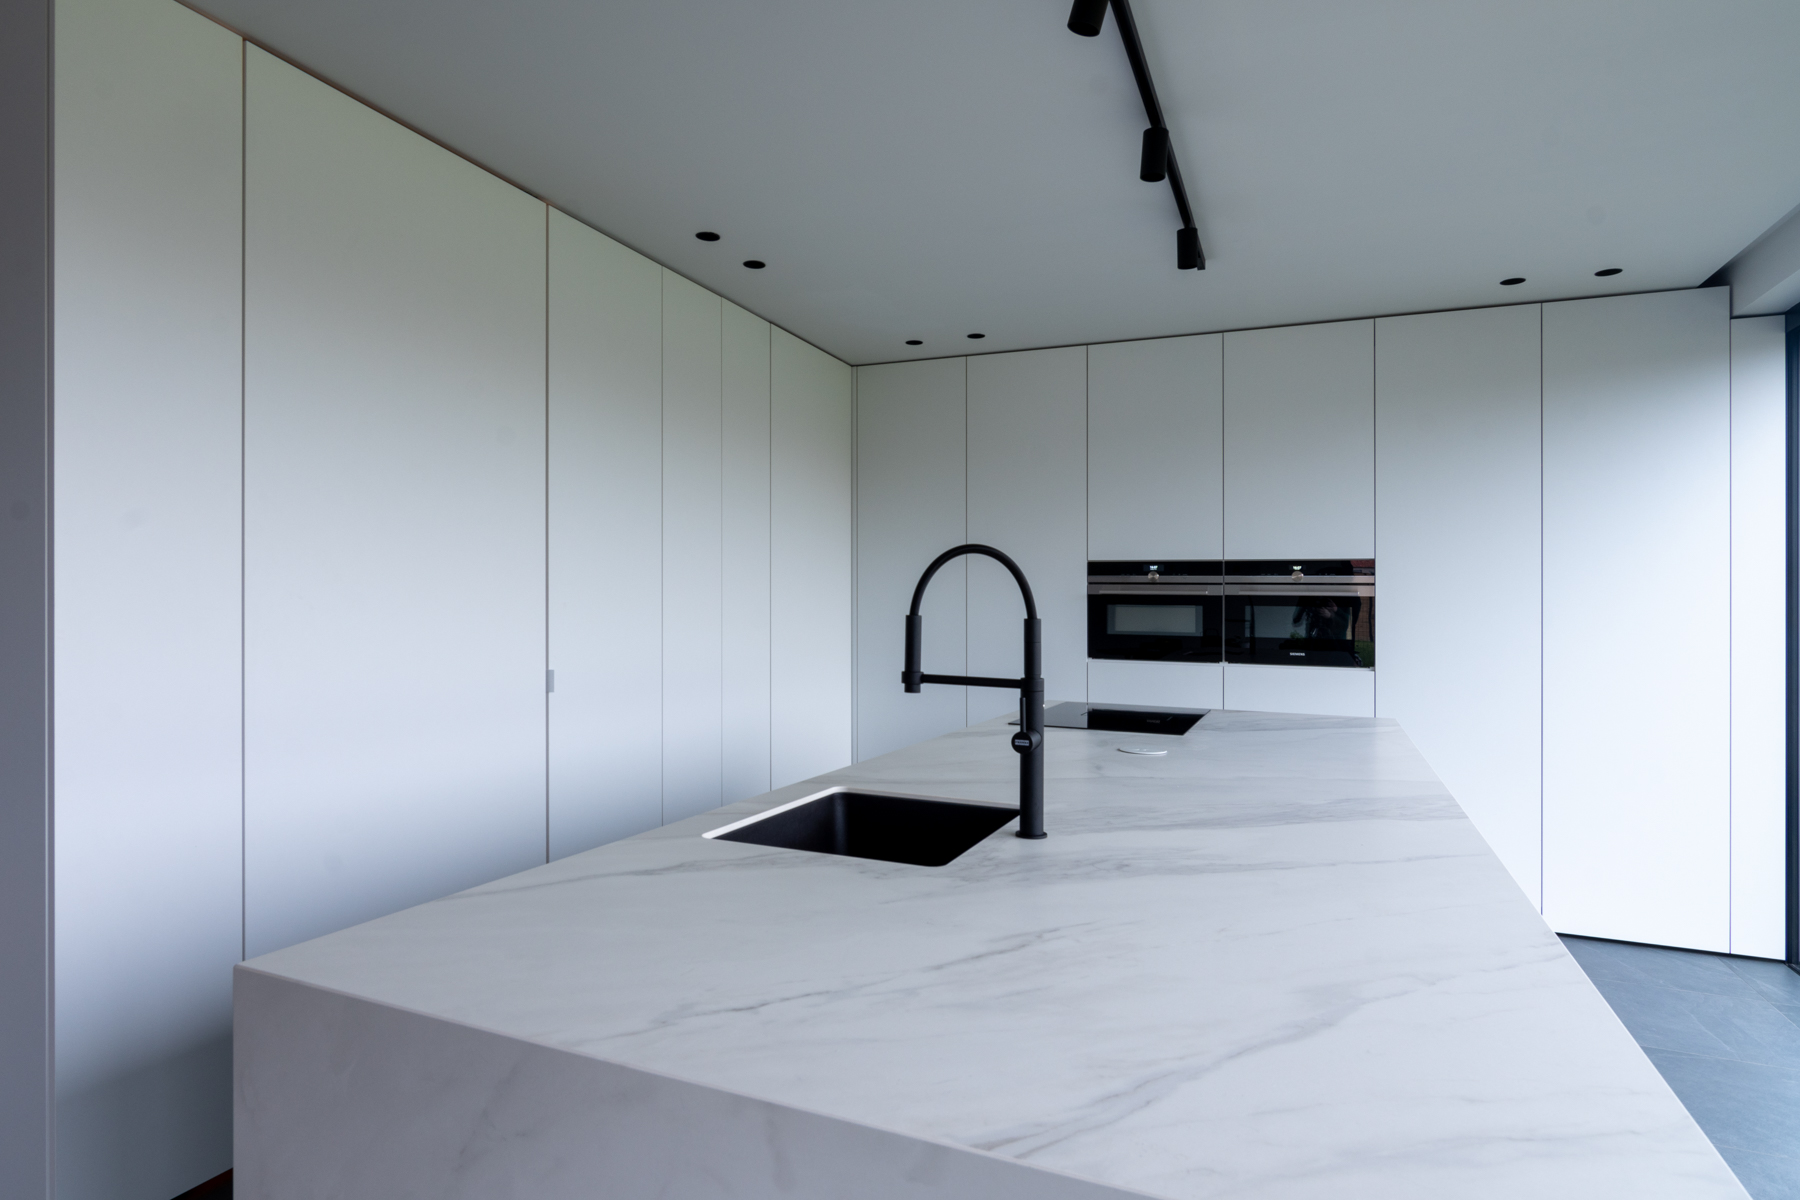 Witte keuken met marmerlook werkblad én zwarte toestellen.